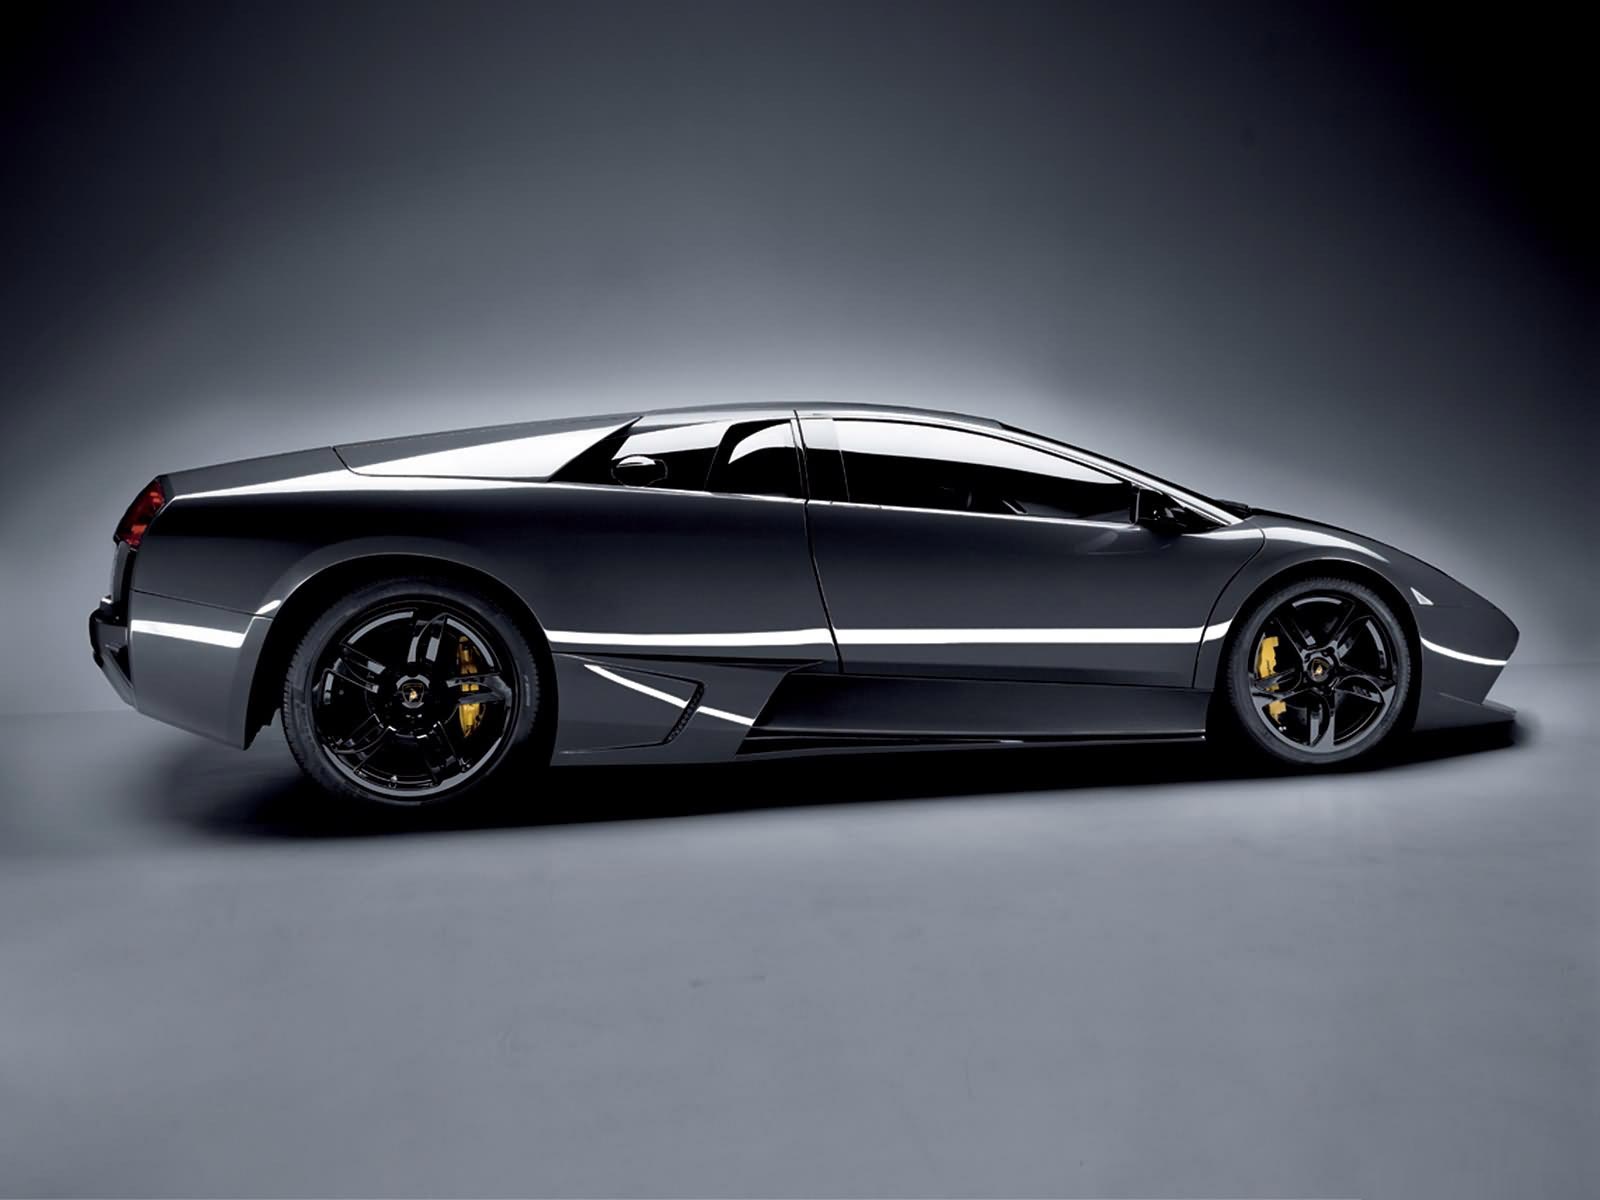 ... of Super Sporty looks of 2012 Lamborghini Gallardo Coupe Car picture